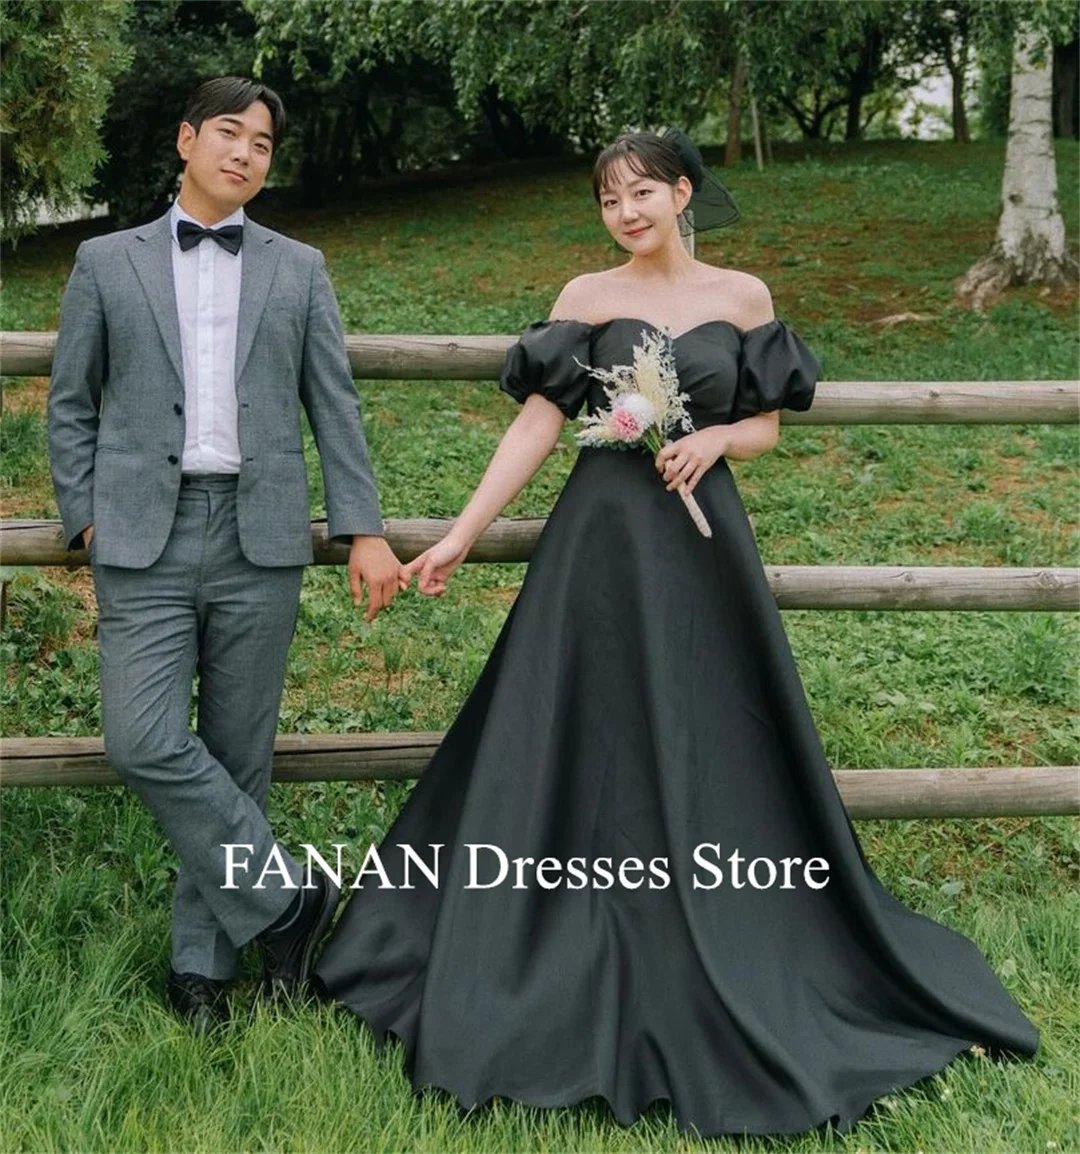 

Женское платье без бретелек FANAN, вечернее ТРАПЕЦИЕВИДНОЕ ПЛАТЬЕ с пышными рукавами, элегантное платье в Корейском стиле для свадьбы, выпускного вечера